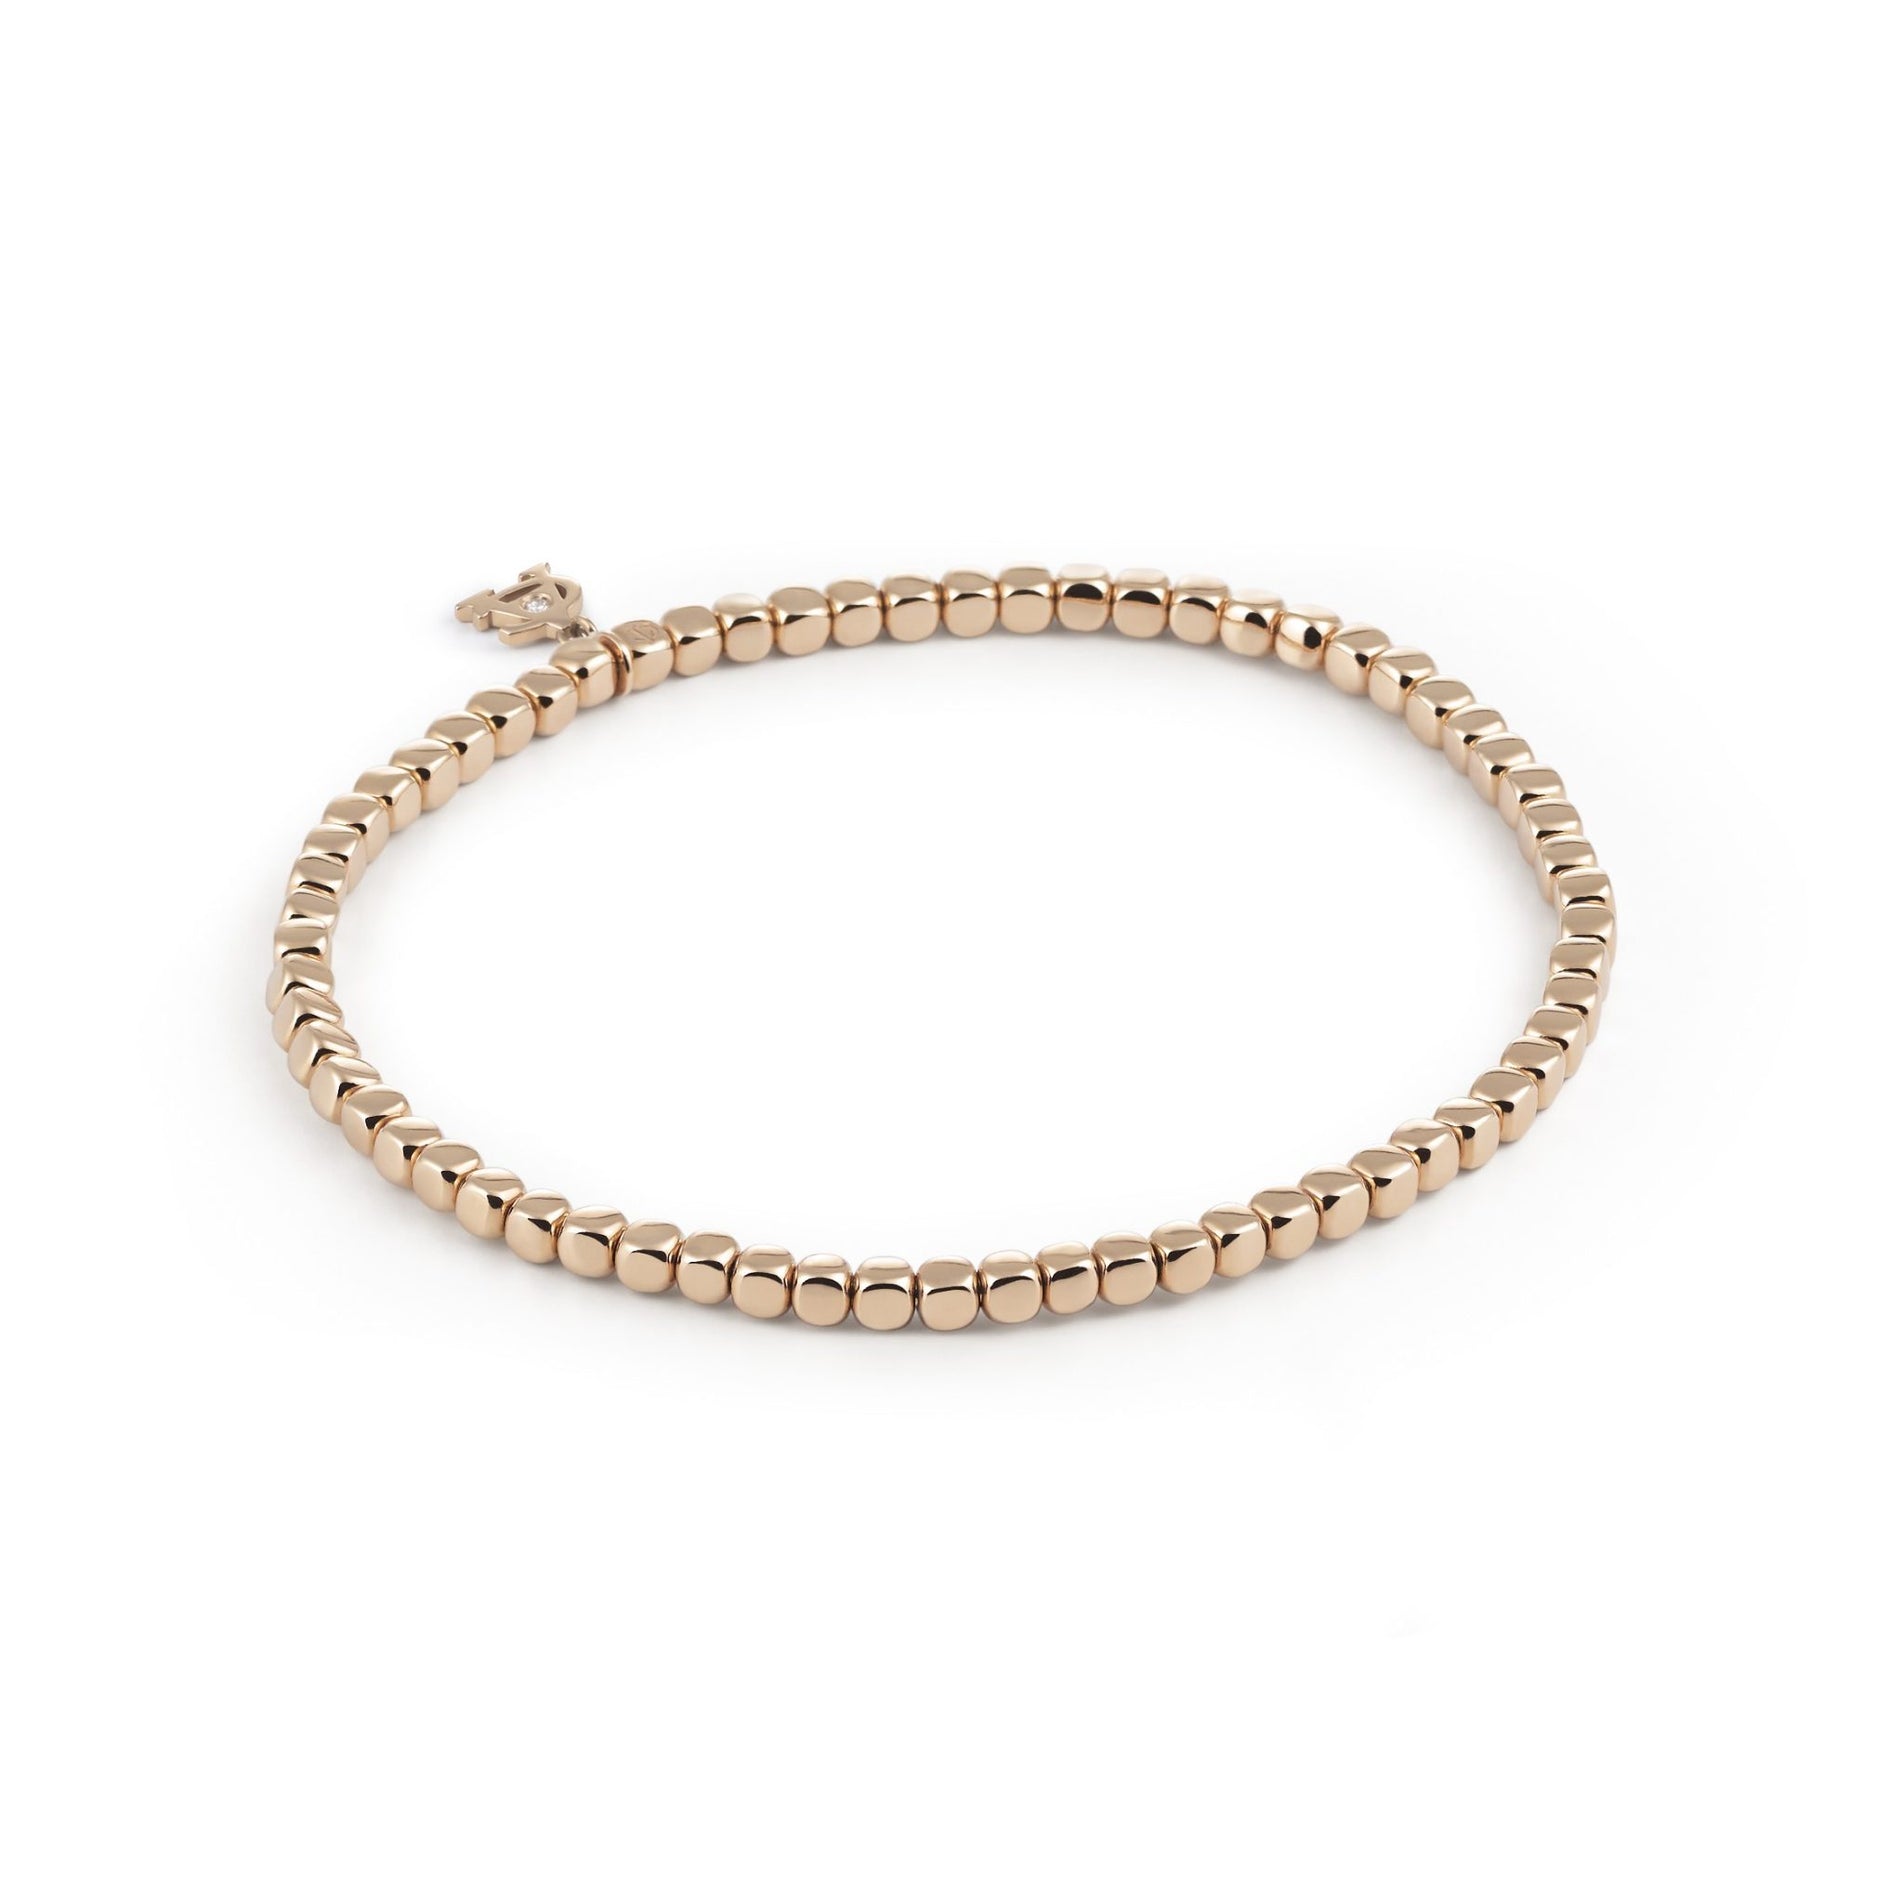 Al Coro Square Stretchy Bracelet in 18k Rose Gold - Orsini Jewellers